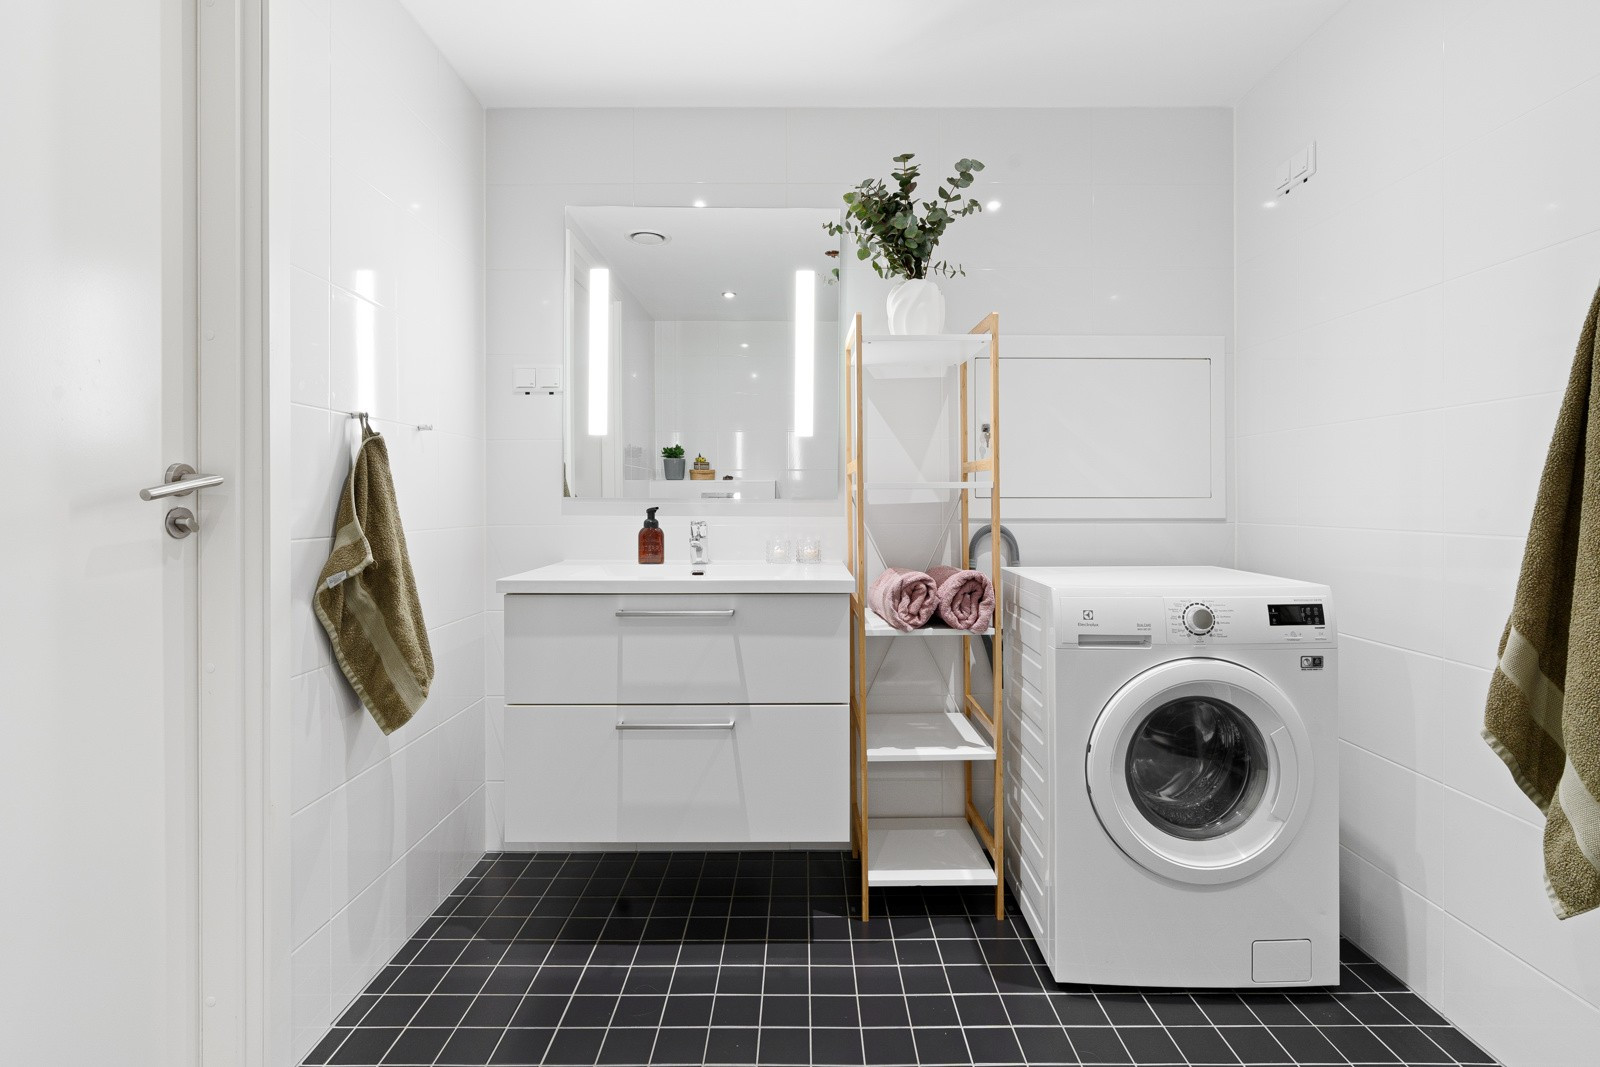 Speil med lys over servant, og opplegg til vaskemaskin som gir enkelhet og bekvemmelighet i hverdagen.